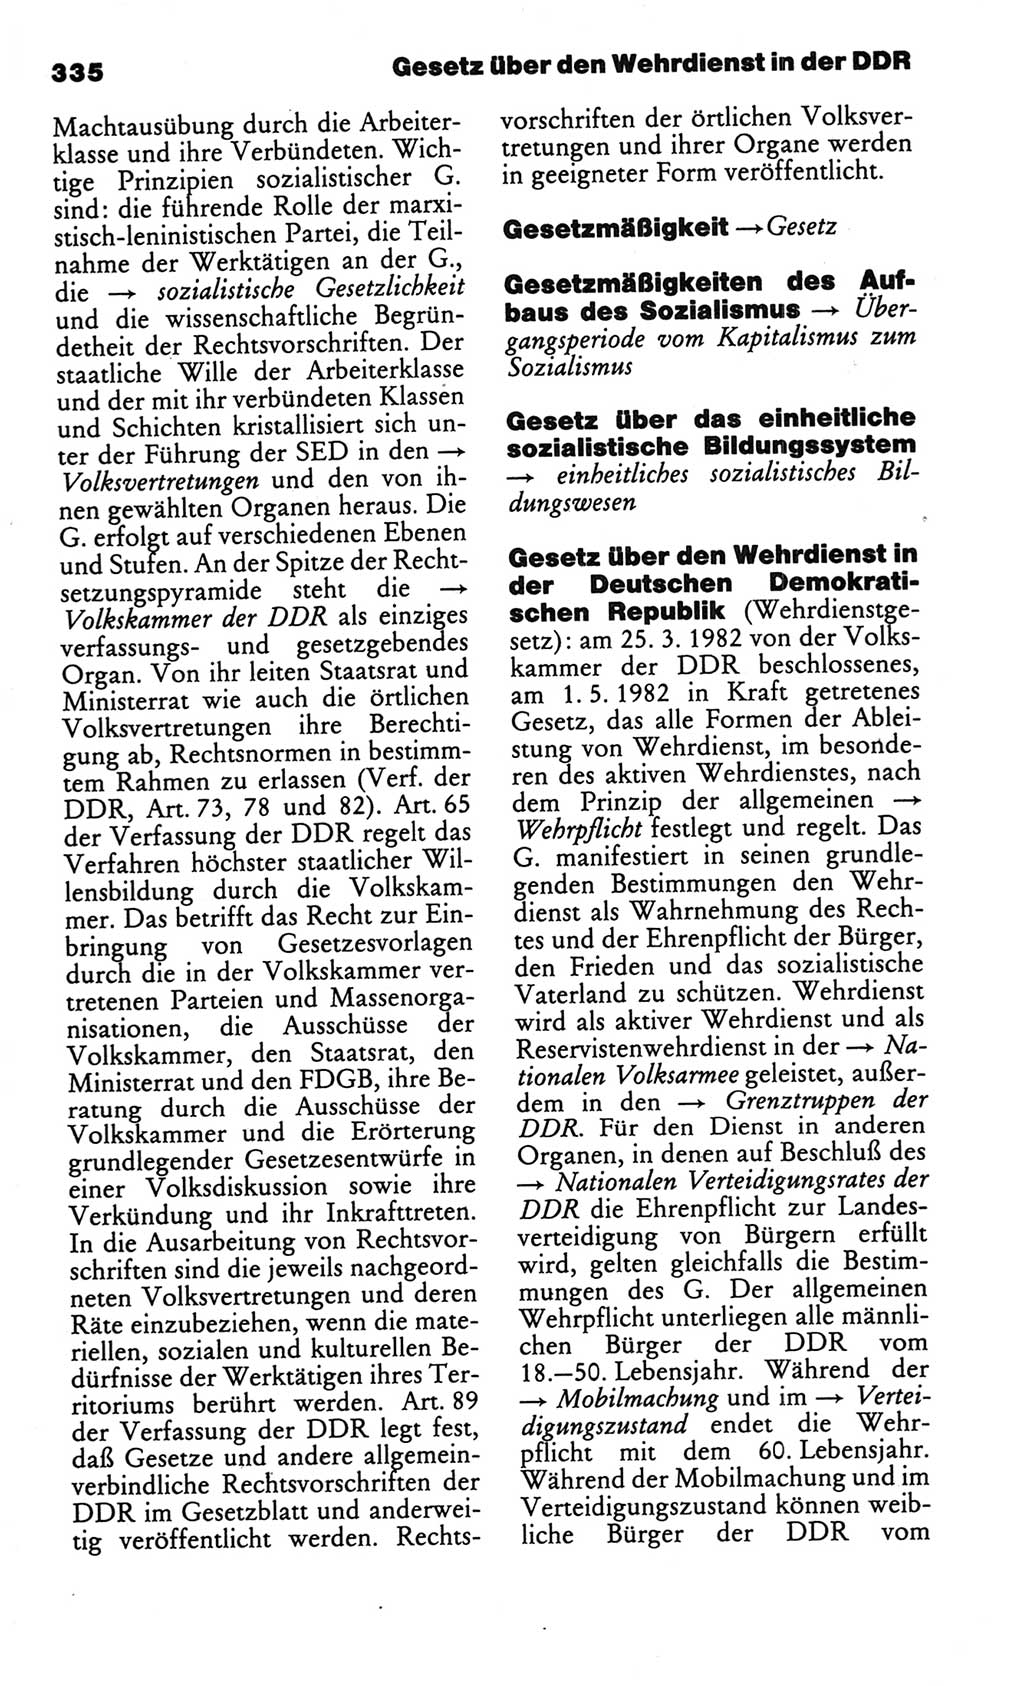 Kleines politisches Wörterbuch [Deutsche Demokratische Republik (DDR)] 1986, Seite 335 (Kl. pol. Wb. DDR 1986, S. 335)